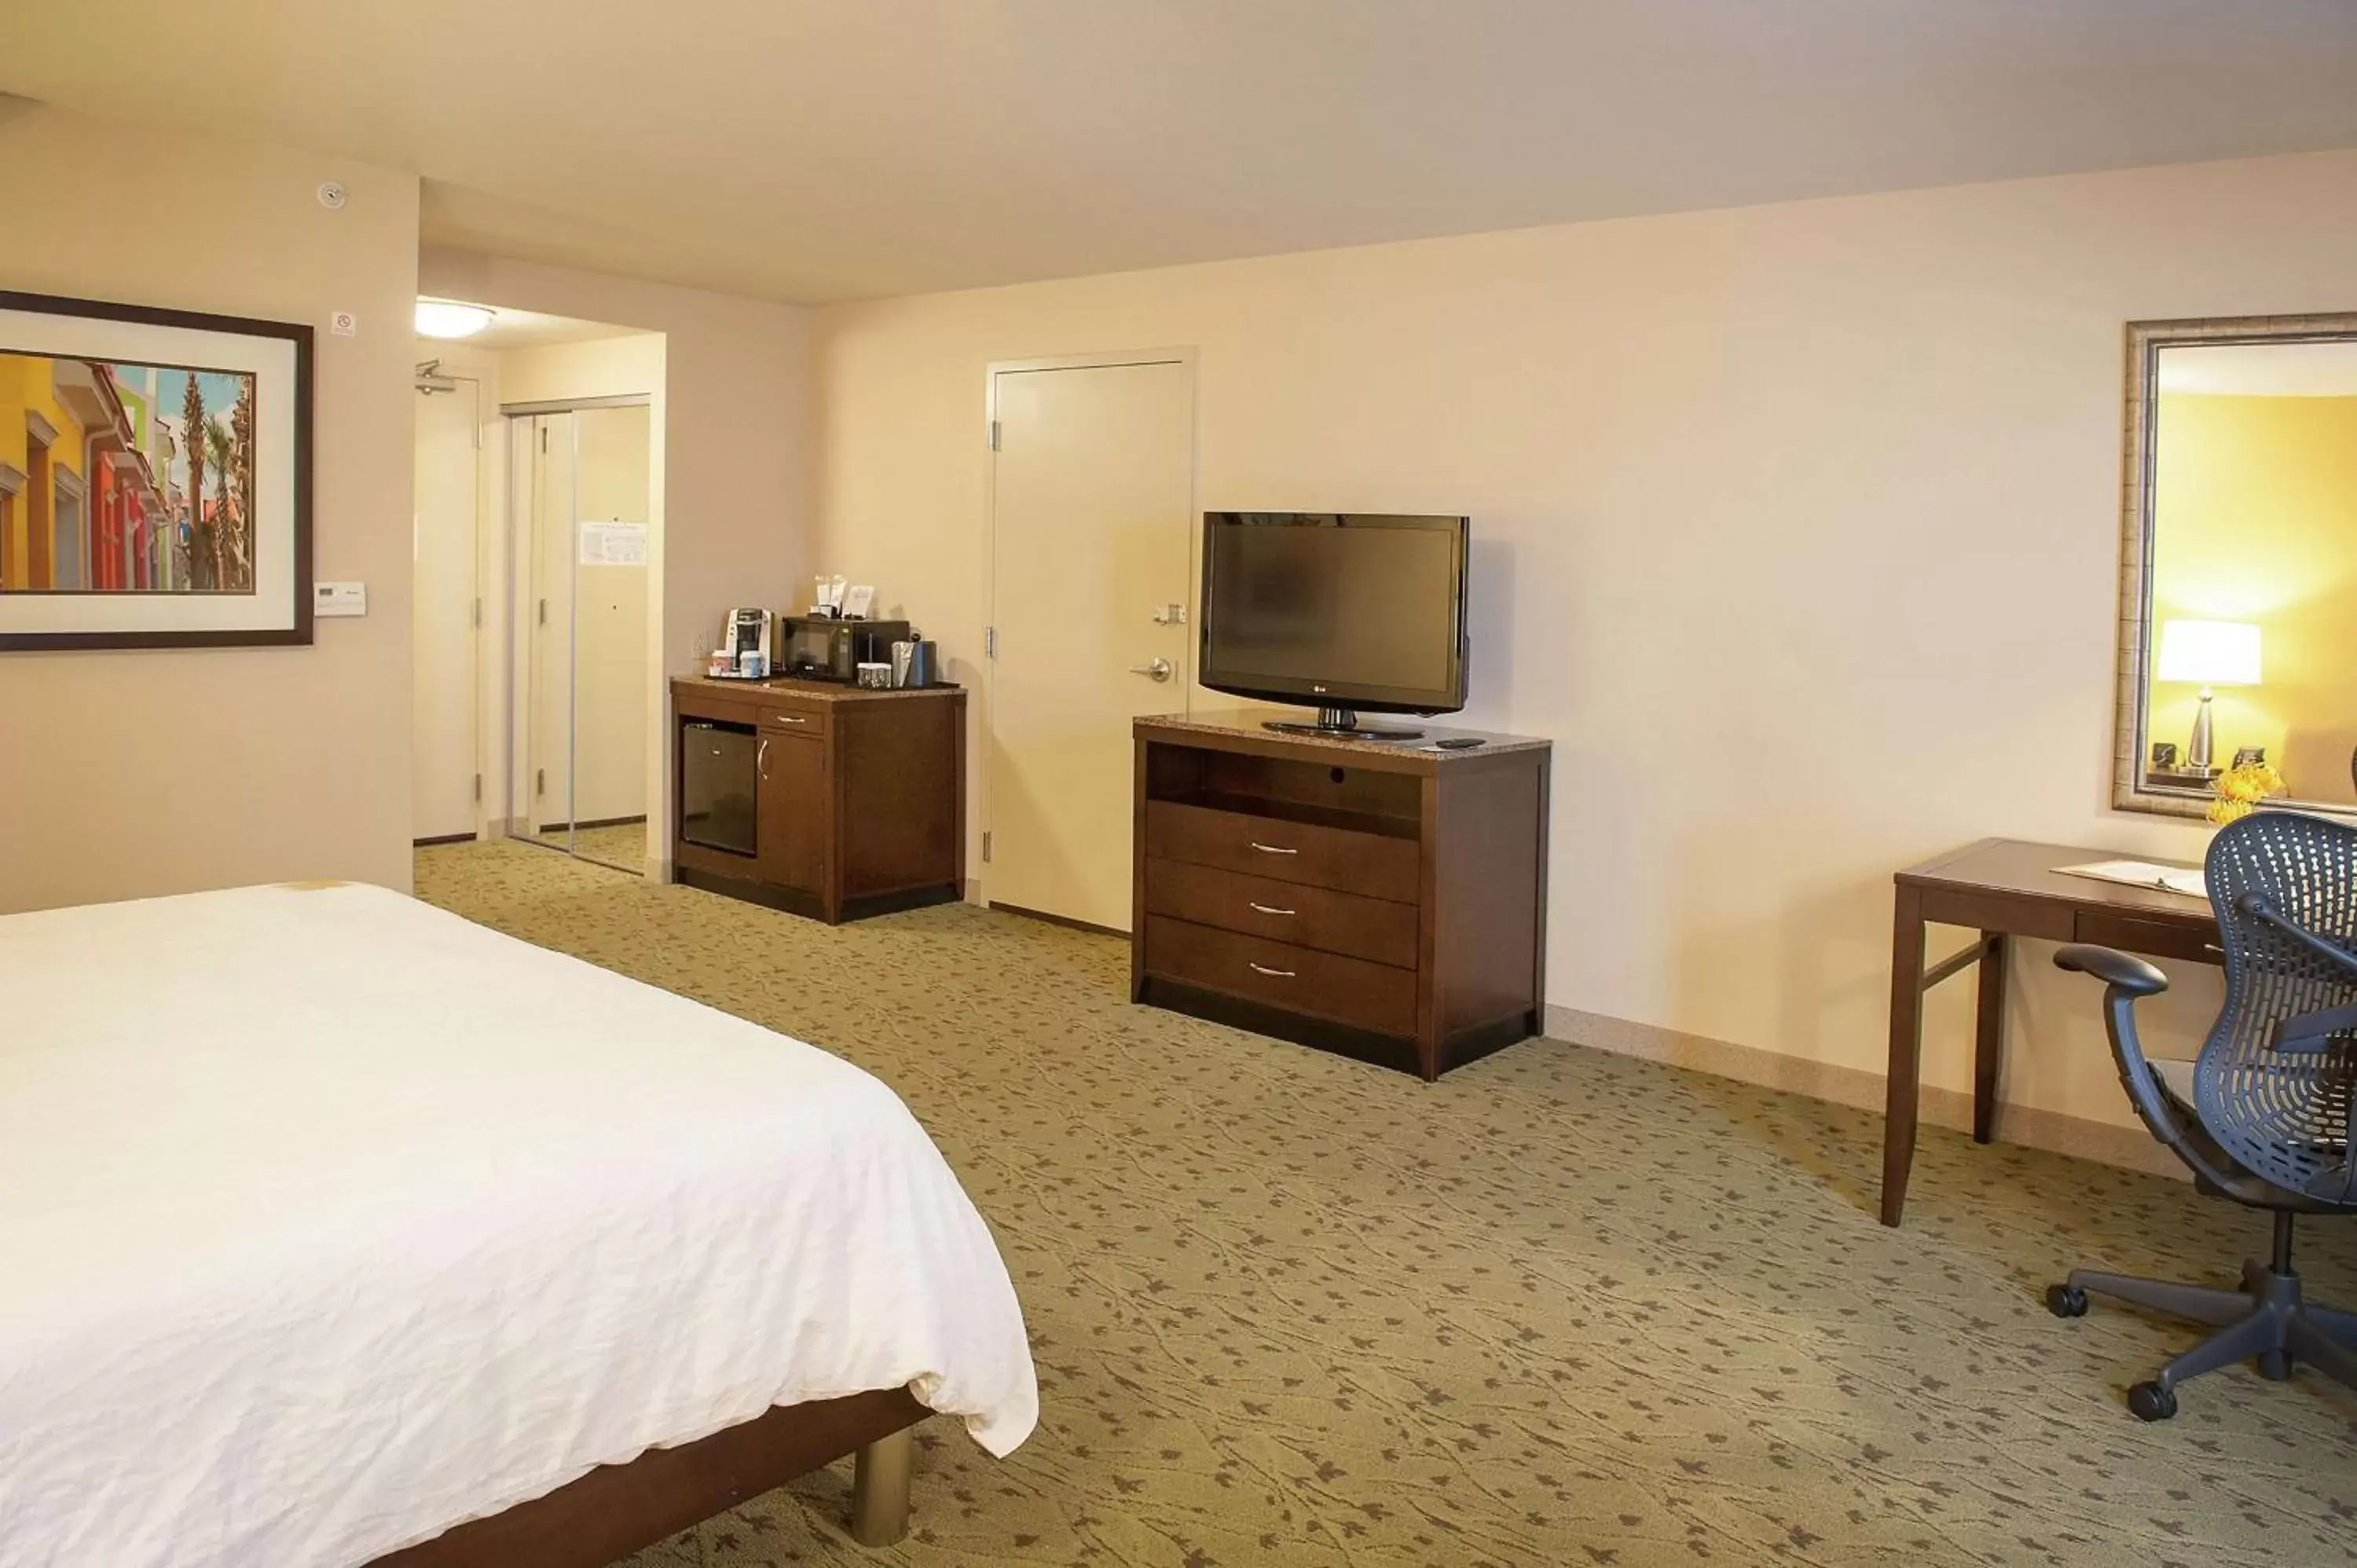 Bedroom, TV/Entertainment Center in Hilton Garden Inn Pensacola Airport/Medical Center